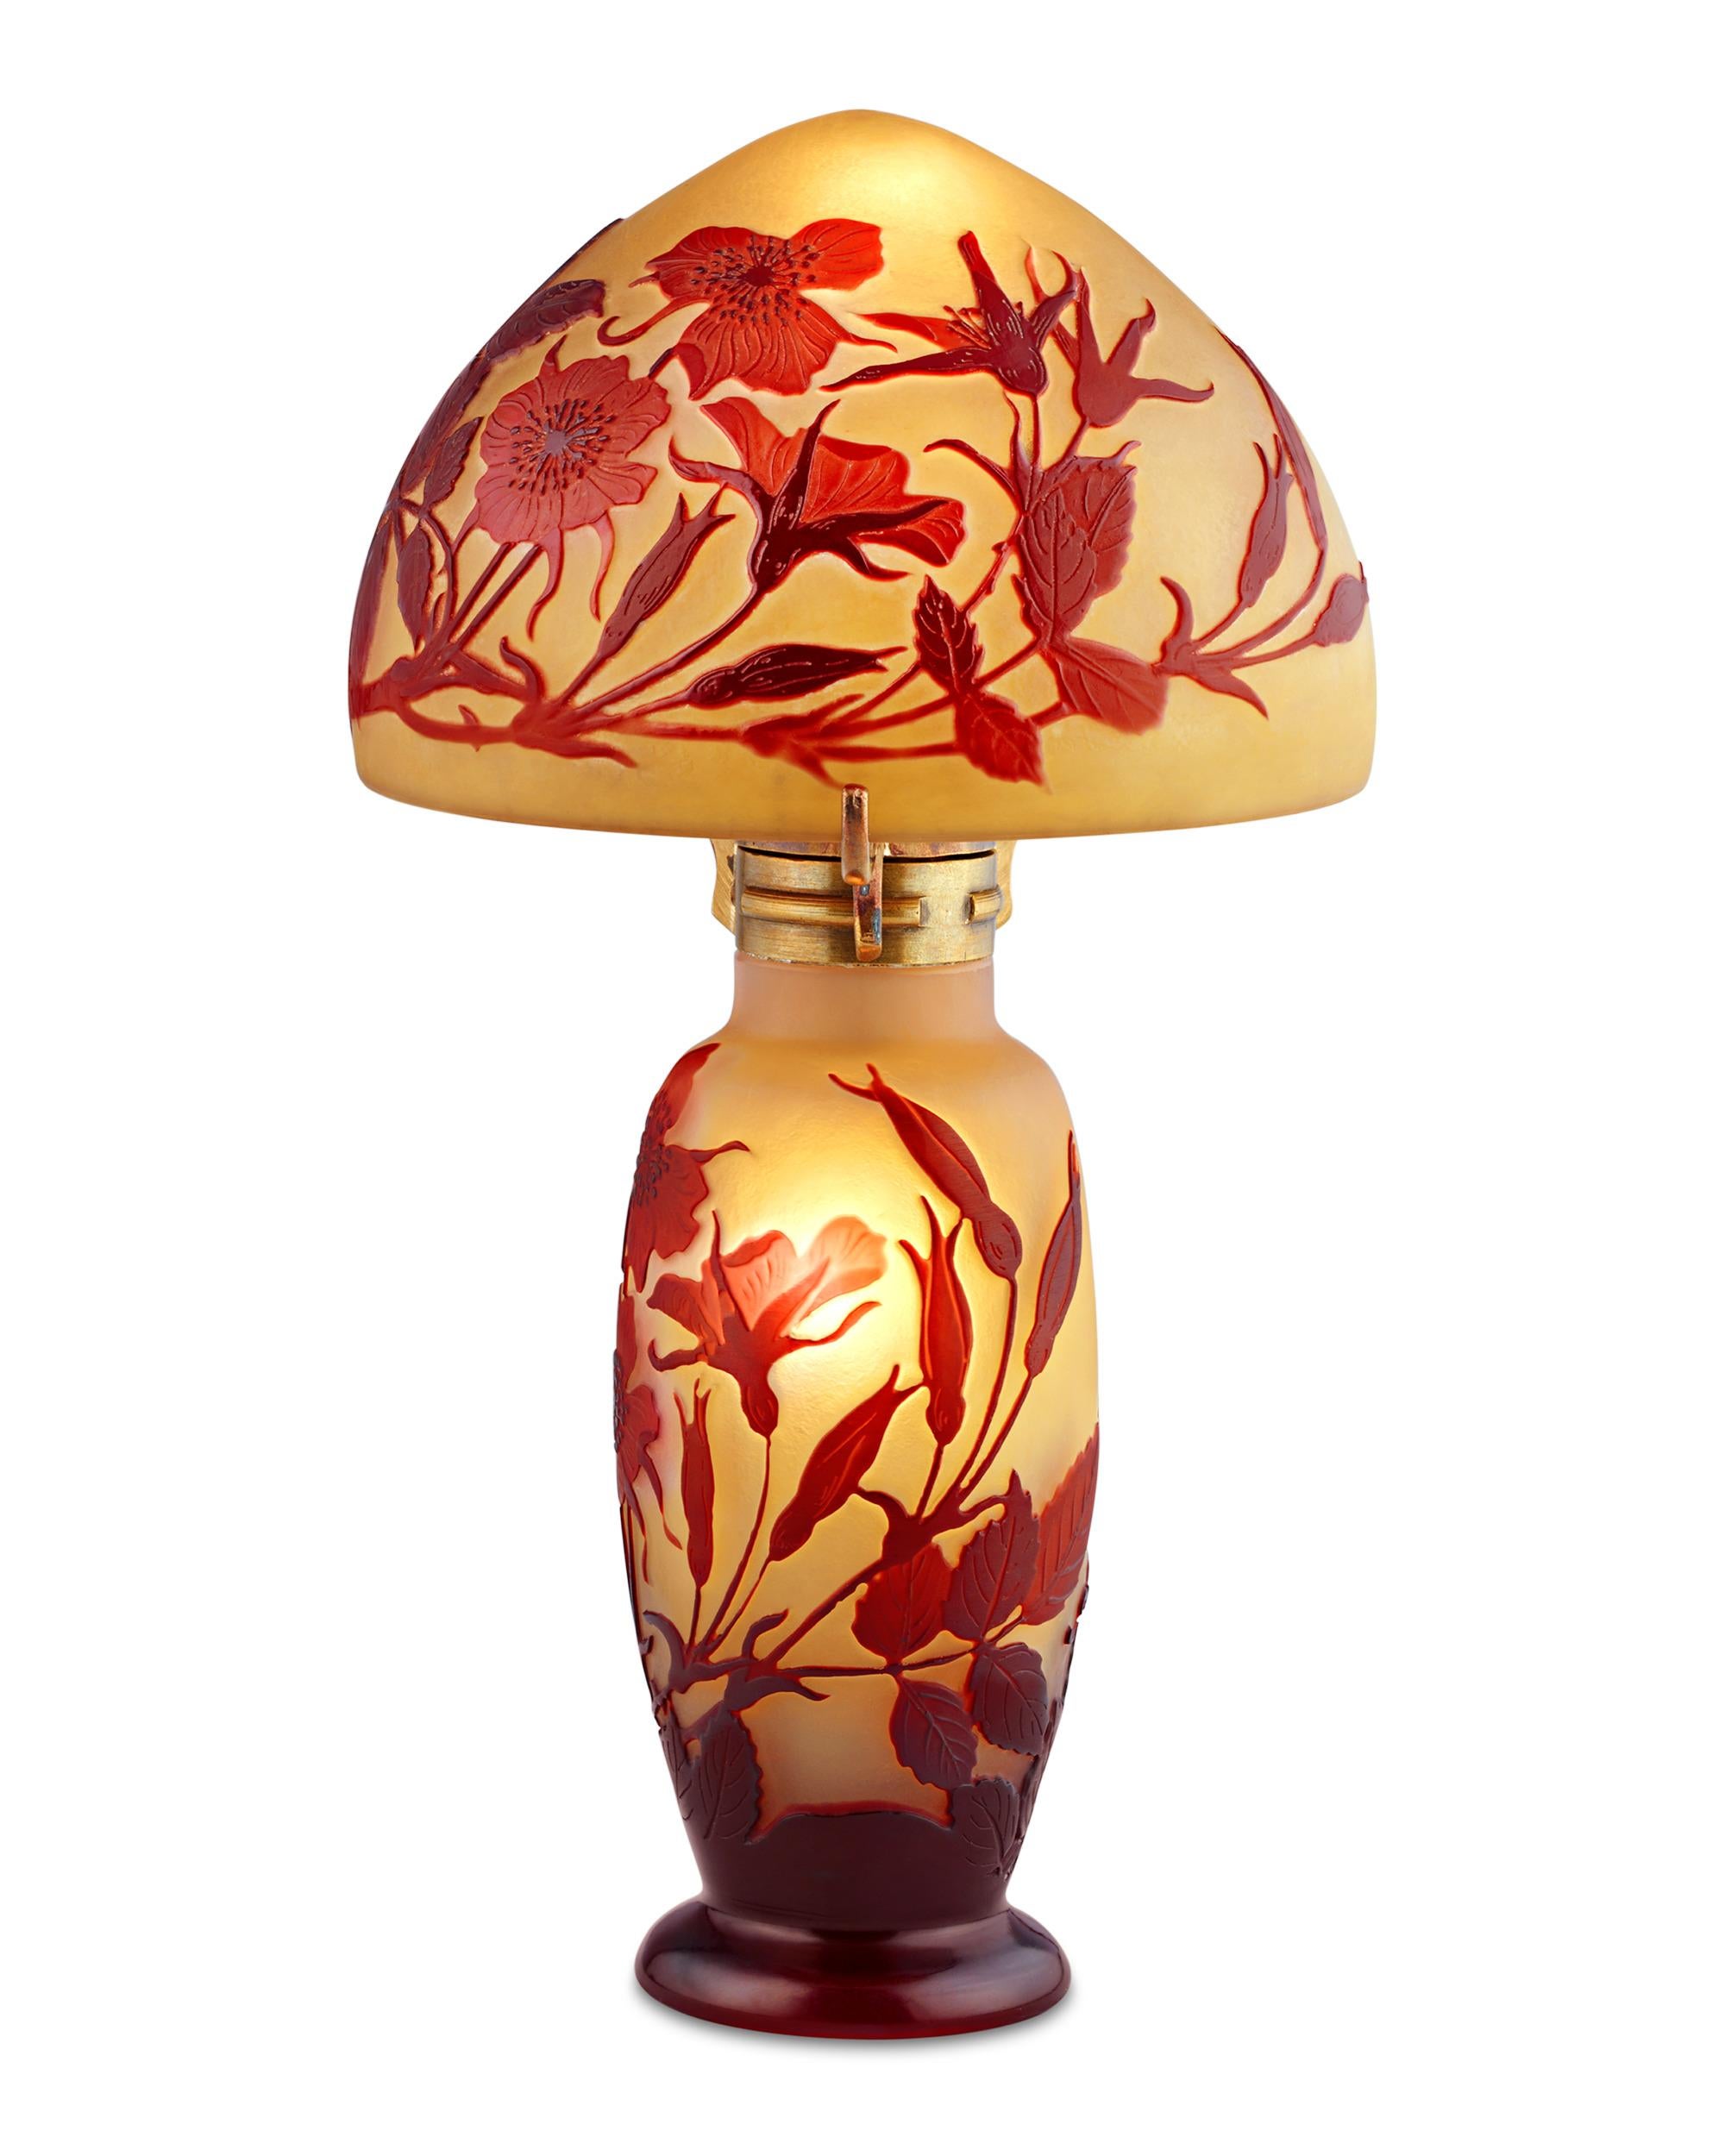 Émile Gallé ist einer der angesehensten Namen in der französischen Glasmacherkunst, und seine Kameenlampen gehören zu seinen begehrtesten Kreationen. Das fein geätzte Motiv aus Blüten und Blättern beweist Gallés präzise Ausführung und seine Liebe